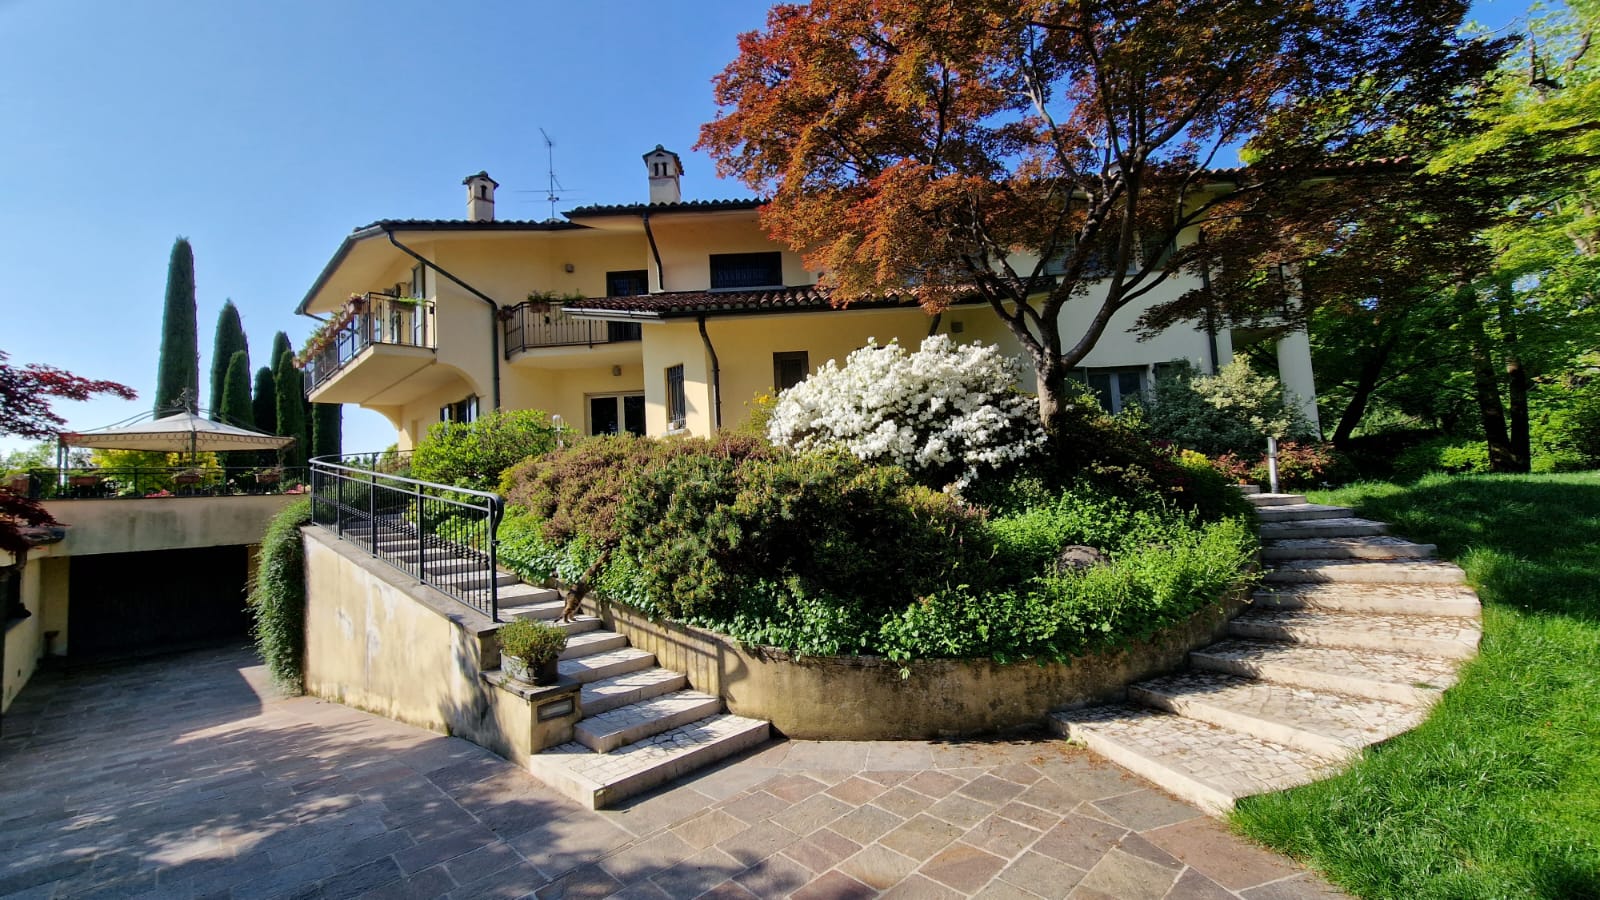 A vendre villa in zone tranquille Bergamo Lombardia